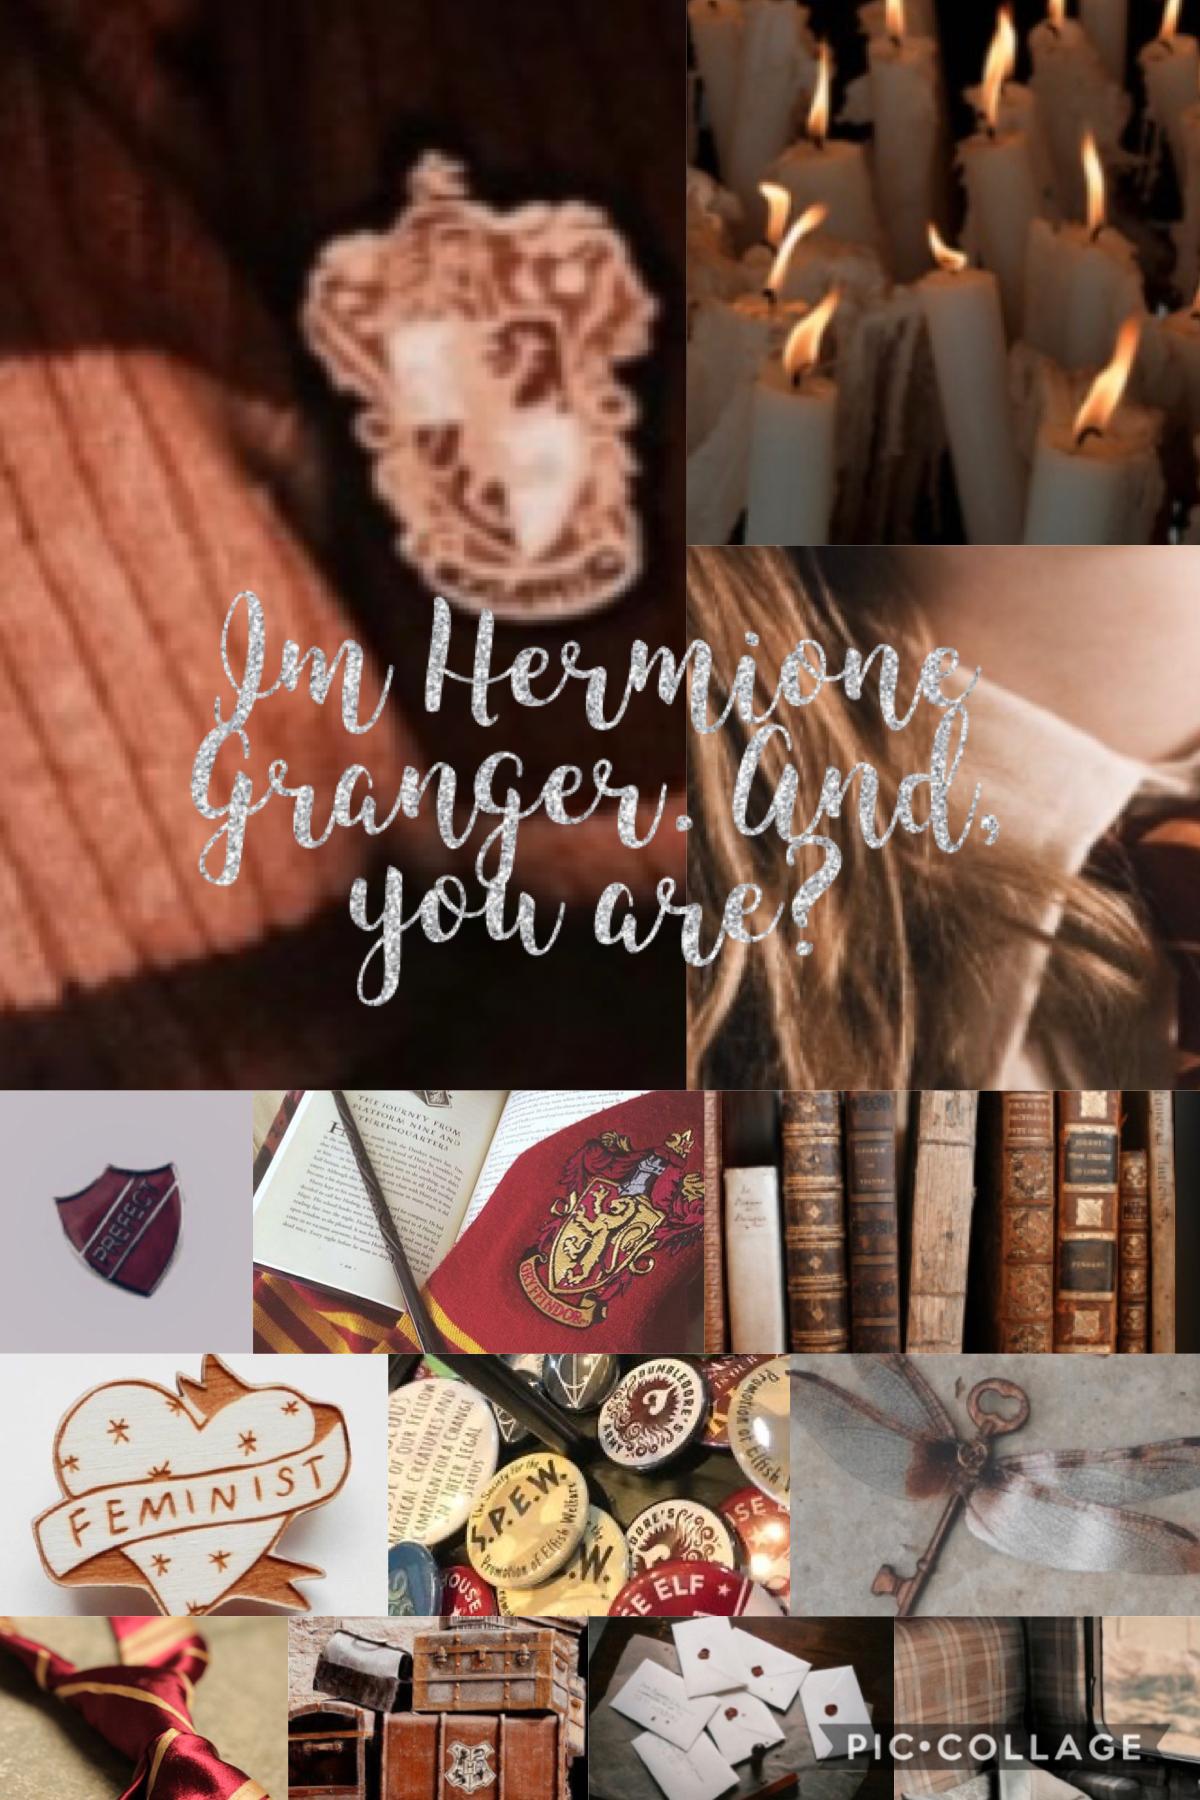 Hermione aesthetics 